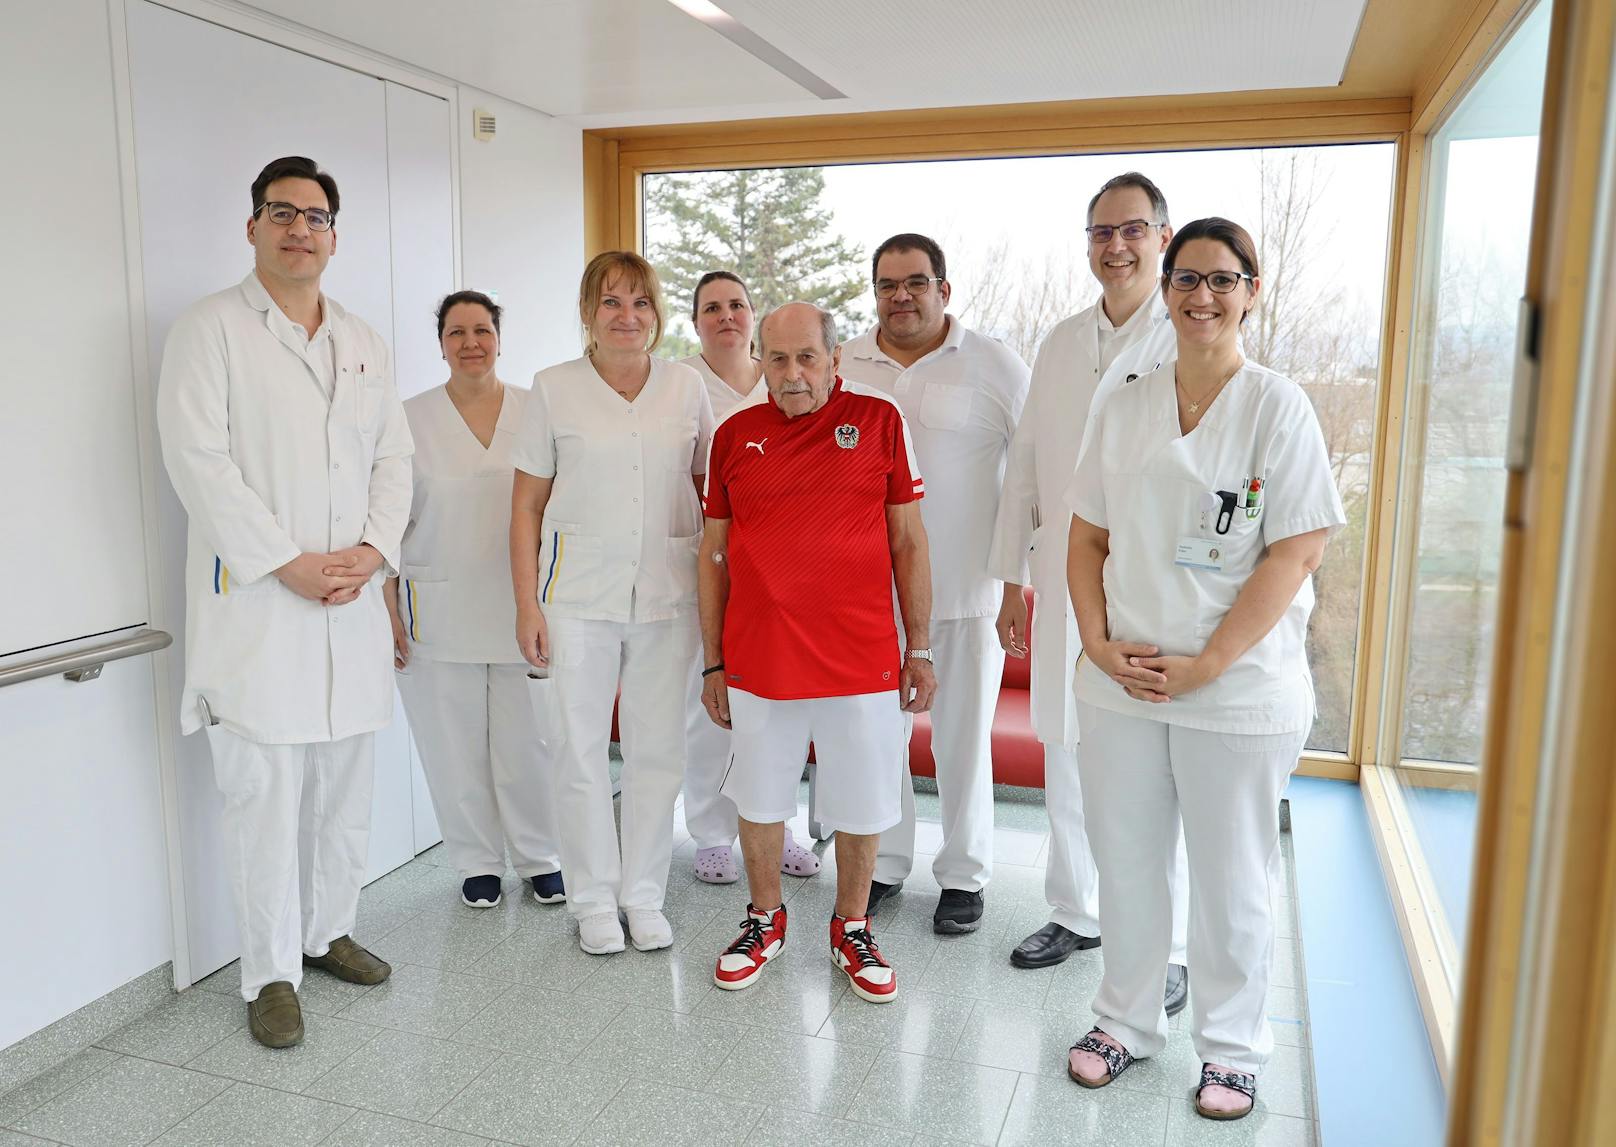 Das behandelnde Team der Neurologie 3 (1.v.l: OA Dozent Dr. Thomas Foki, 1.v.r.: DGKP Isabella Eder, 2.v.r.: Prim. Assoz. Prof. PD Dr. Walter Struhal) mit Leopold Köller.